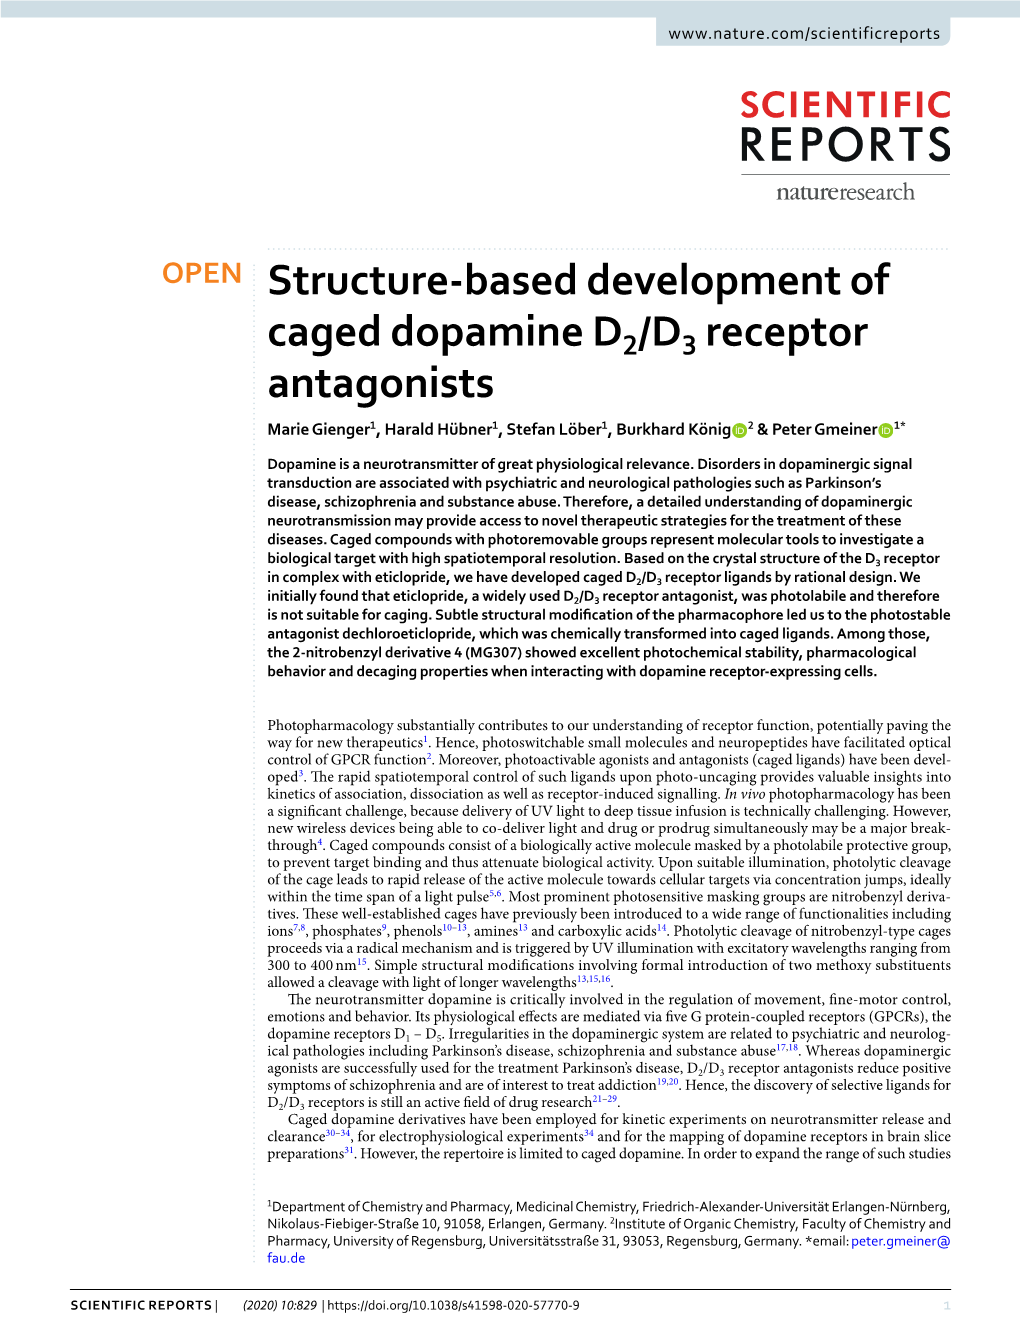 Structure-Based Development of Caged Dopamine D2/D3 Receptor Antagonists Marie Gienger1, Harald Hübner1, Stefan Löber1, Burkhard König 2 & Peter Gmeiner 1*